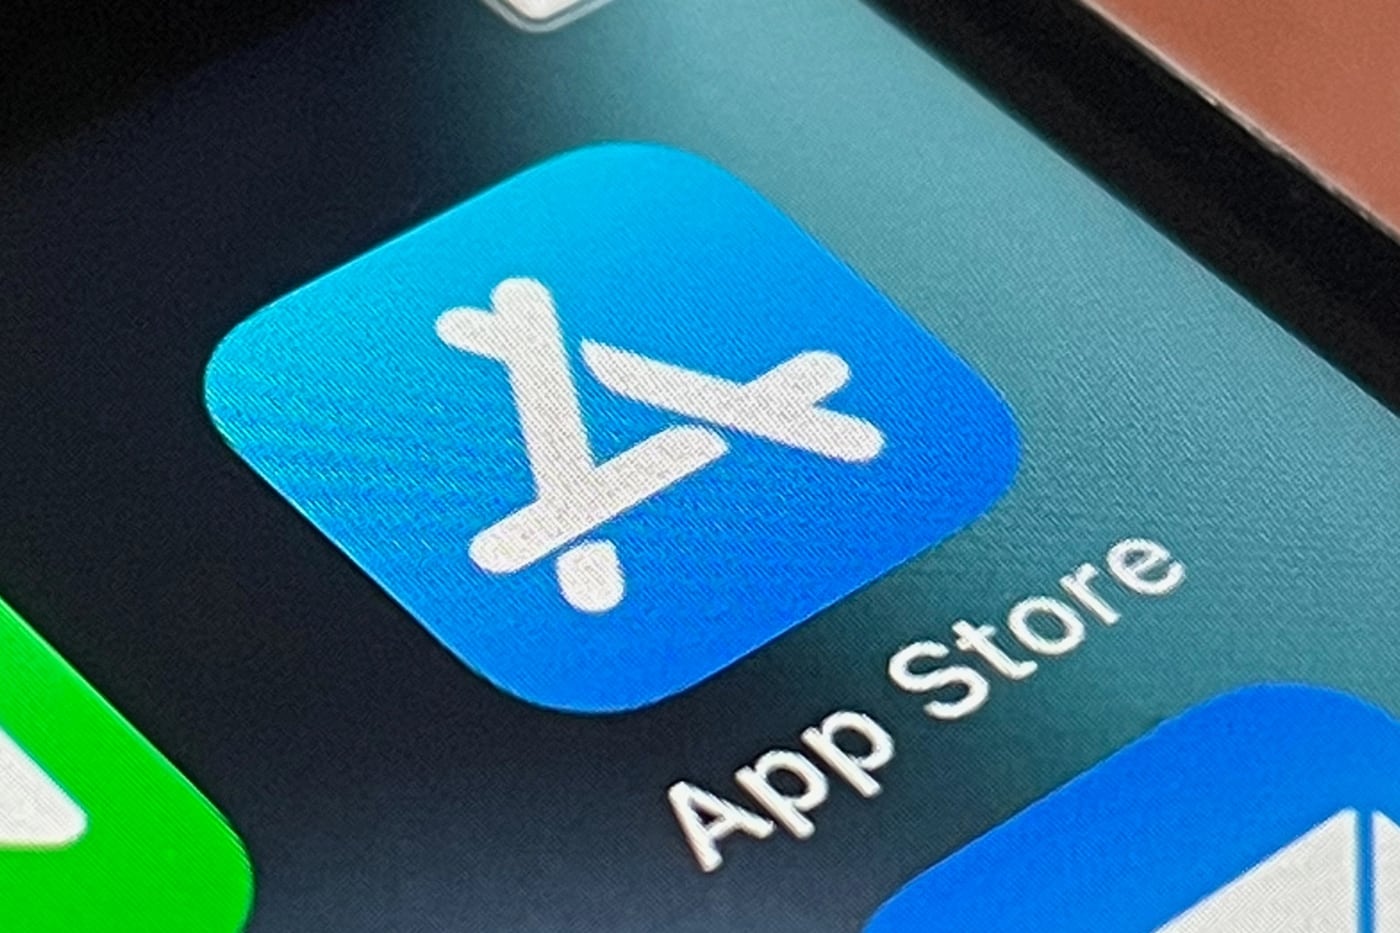 На Авито активно предлагают установить банковские приложения, удаленные из App Store. Это можно сделать бесплатно